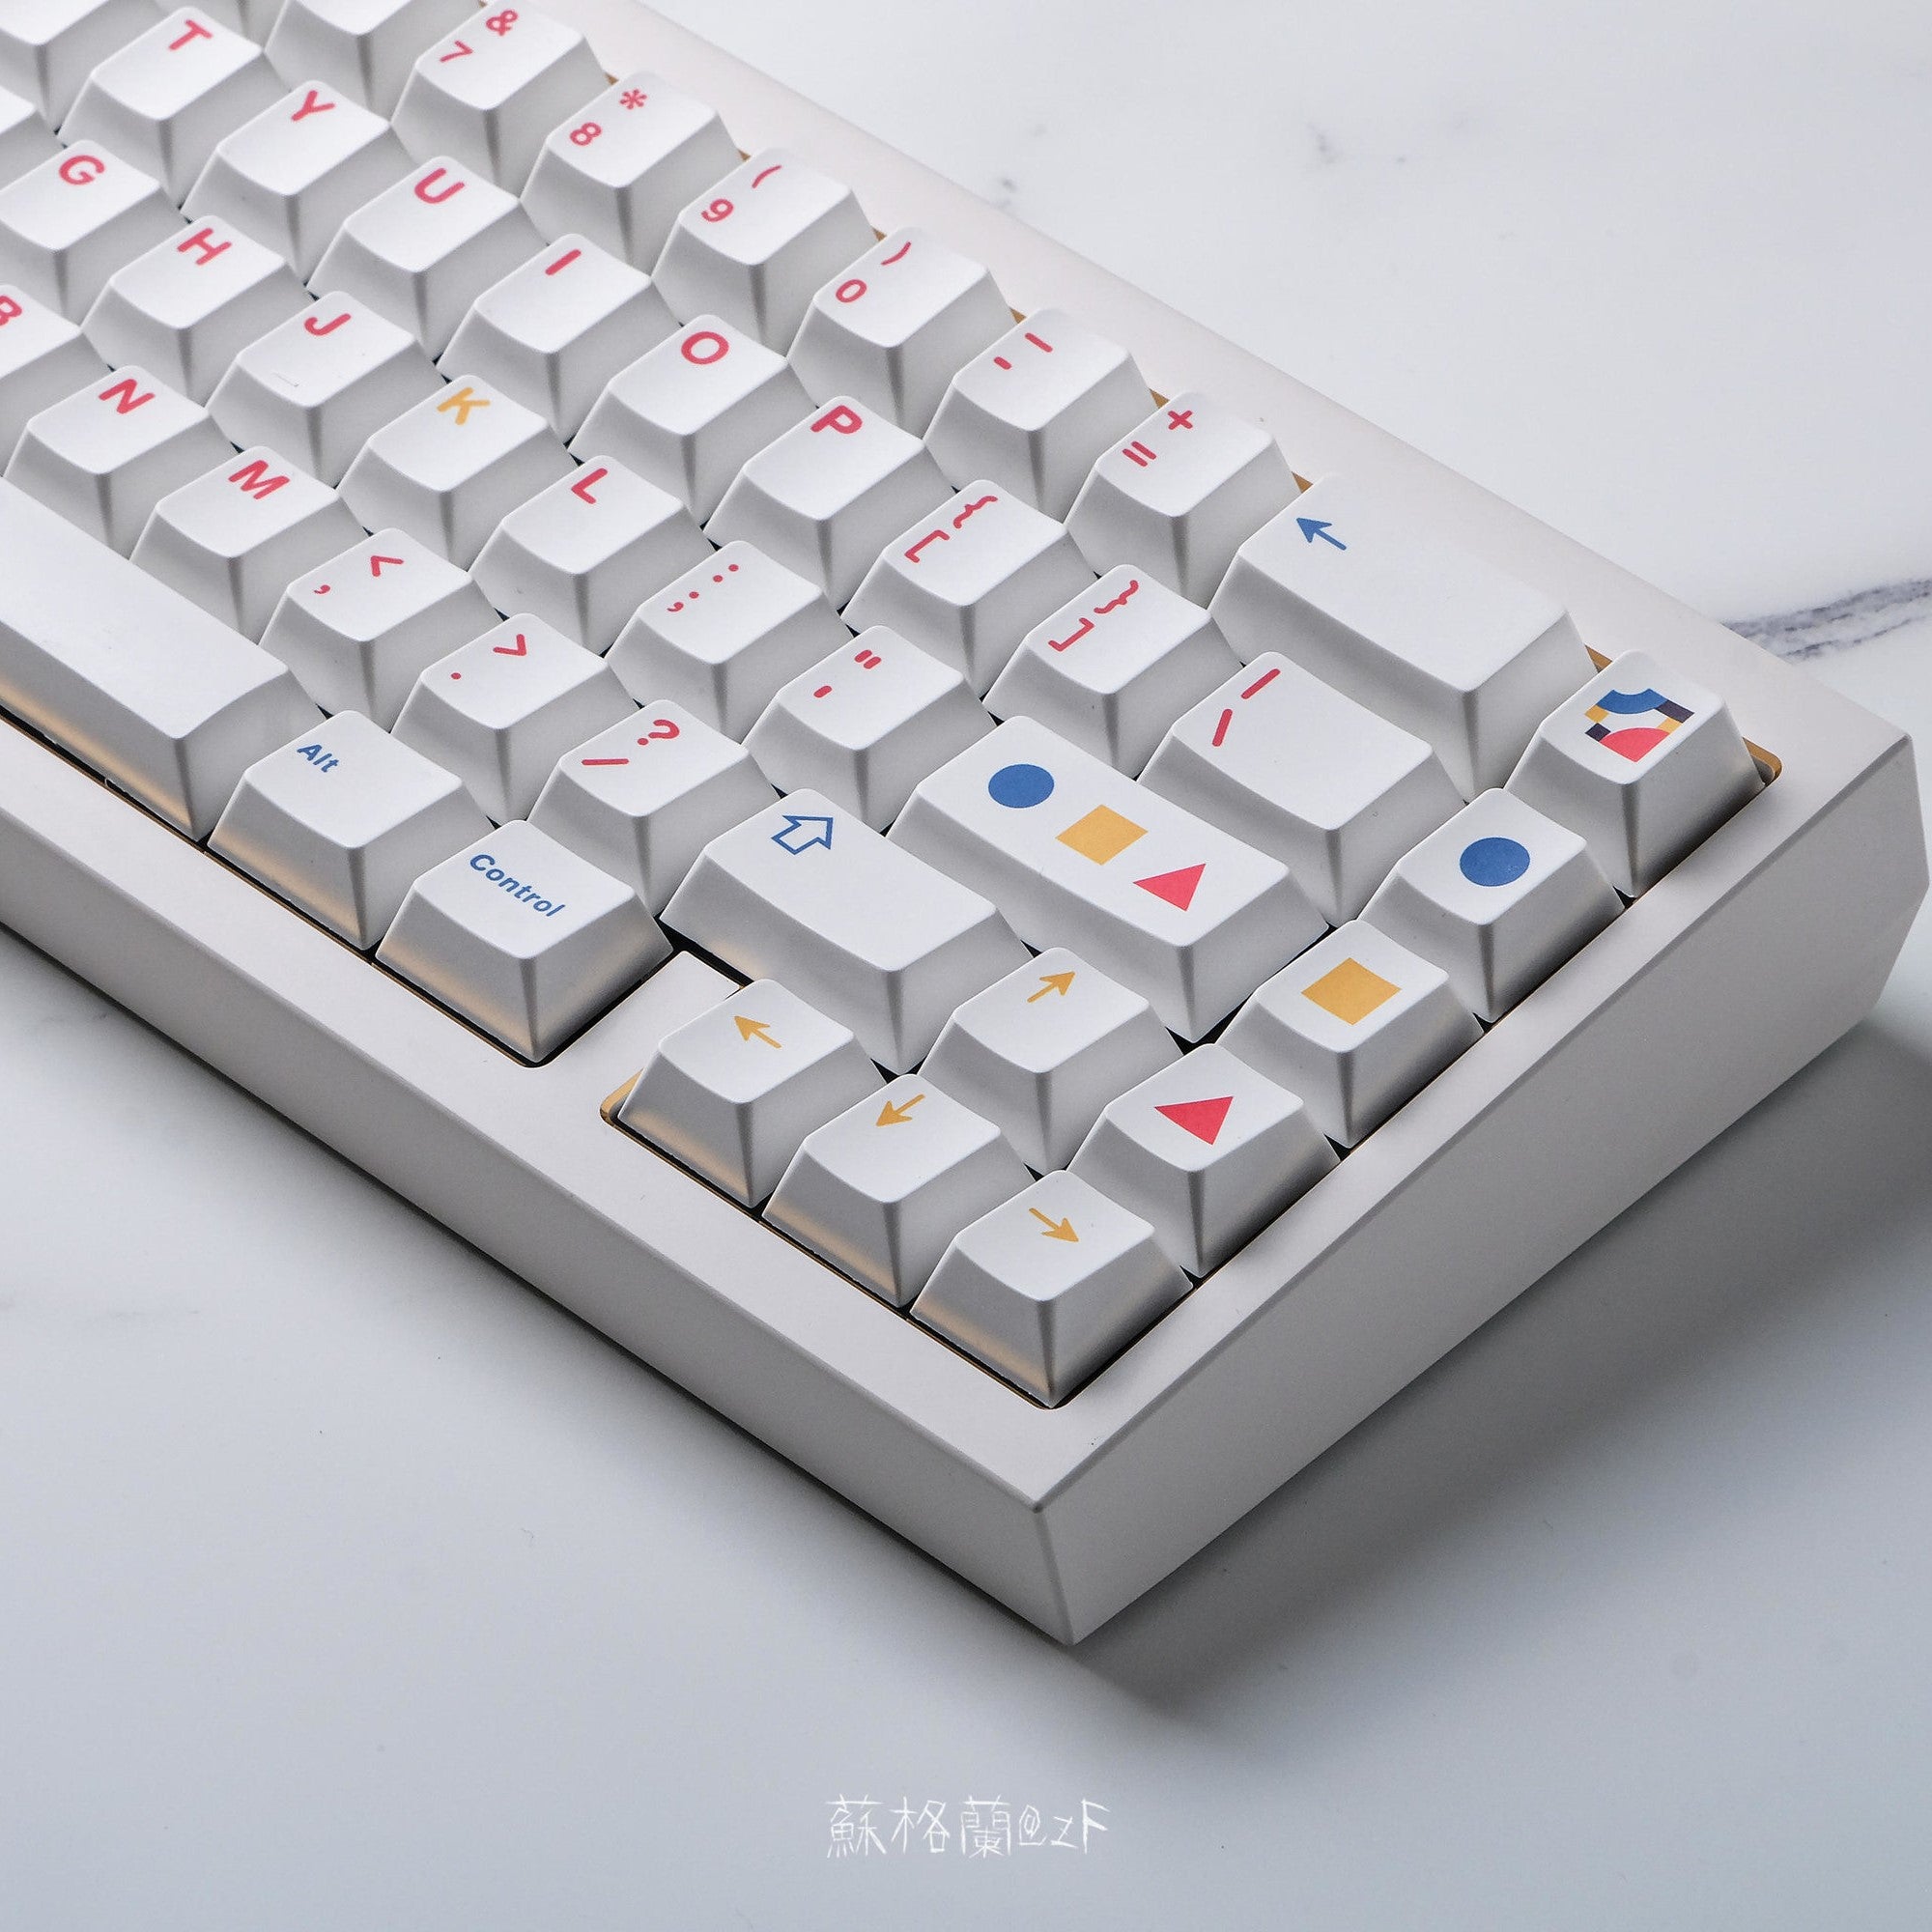 QK65 Keycaps